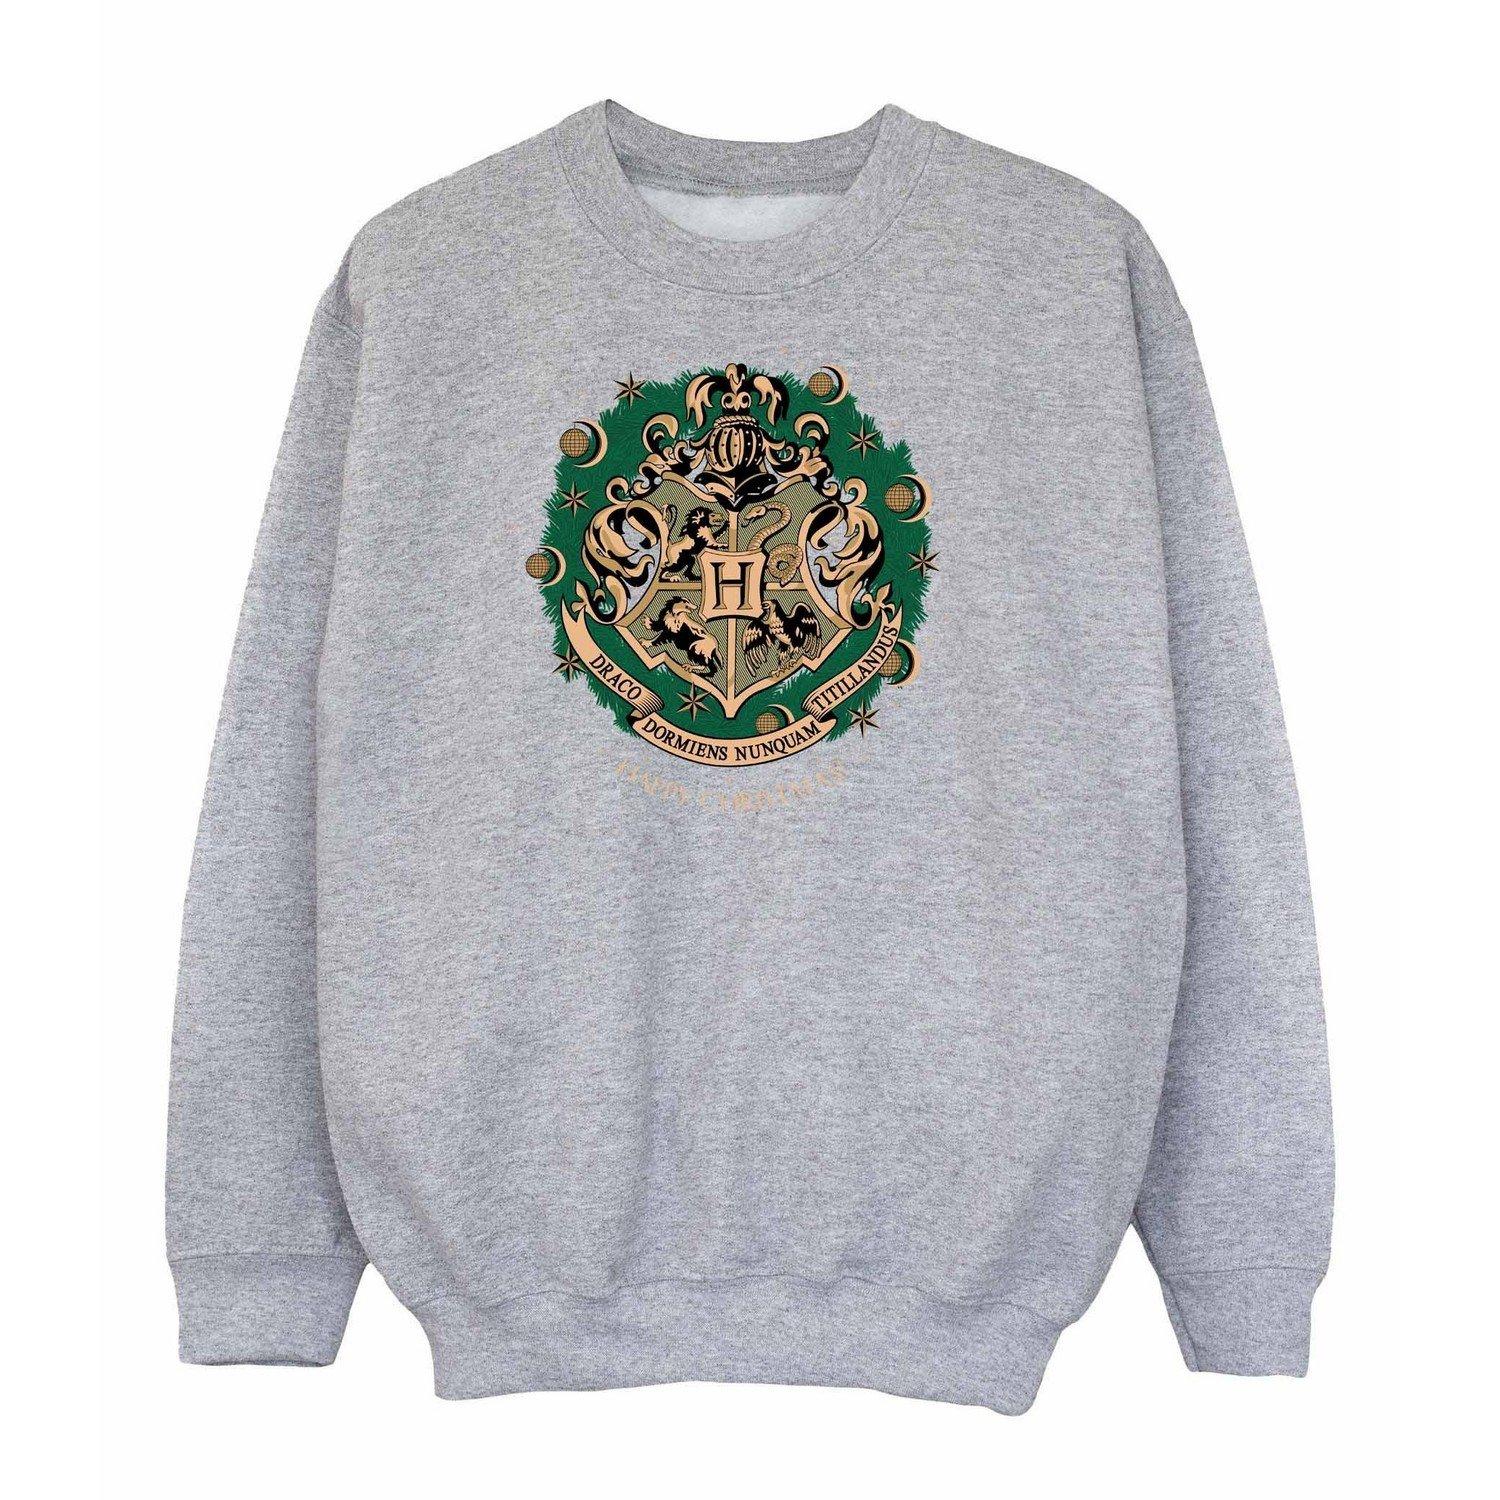 Sweatshirt Weihnachtliches Design Unisex Grau 140/146 von Harry Potter